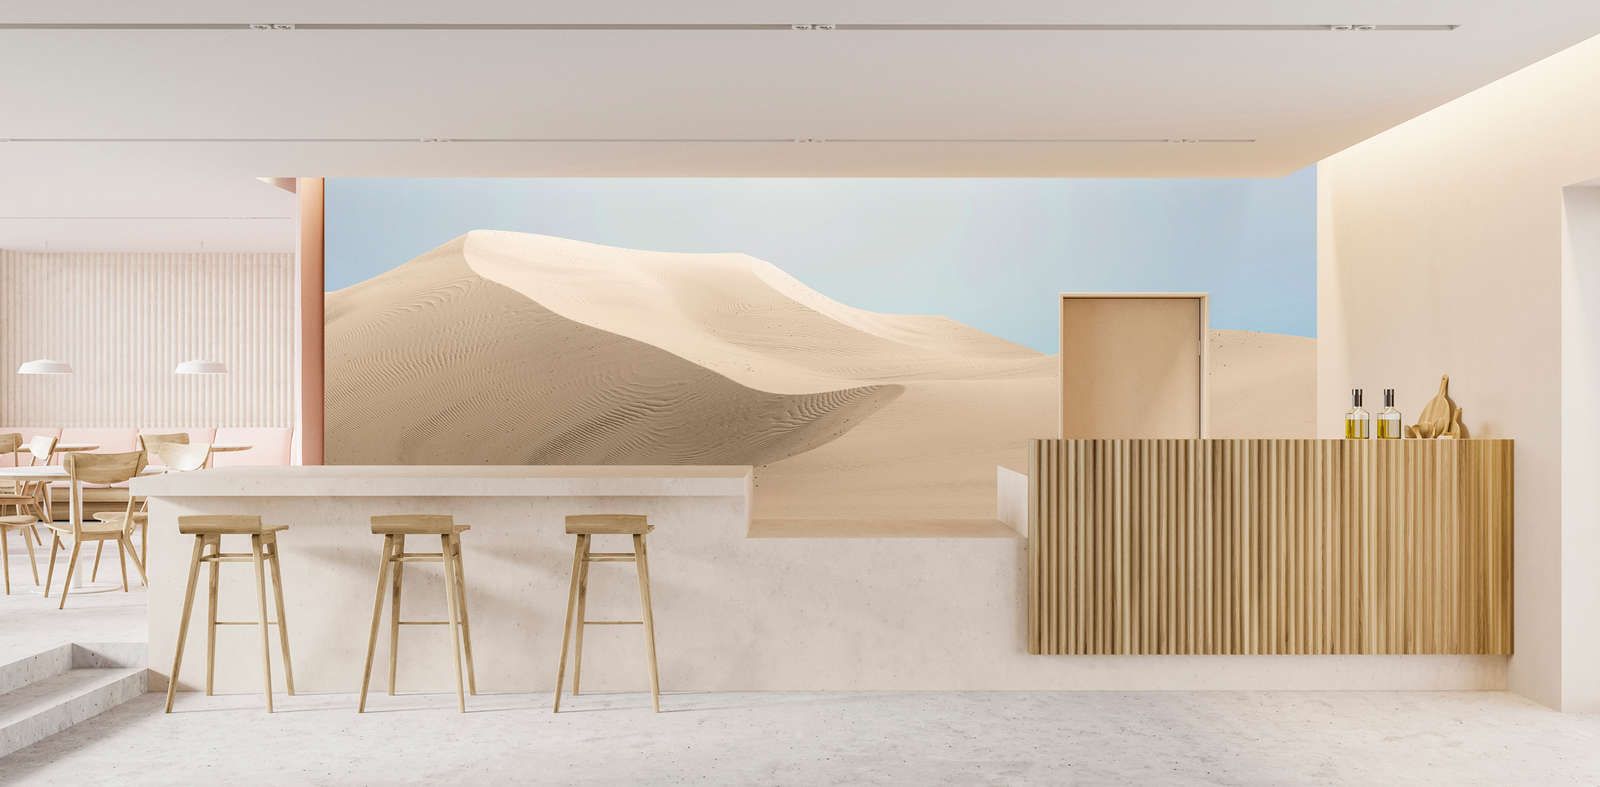             Fotomurali »dune« - Paesaggio desertico dai colori pastello - Materiali non tessuto leggermente strutturato
        